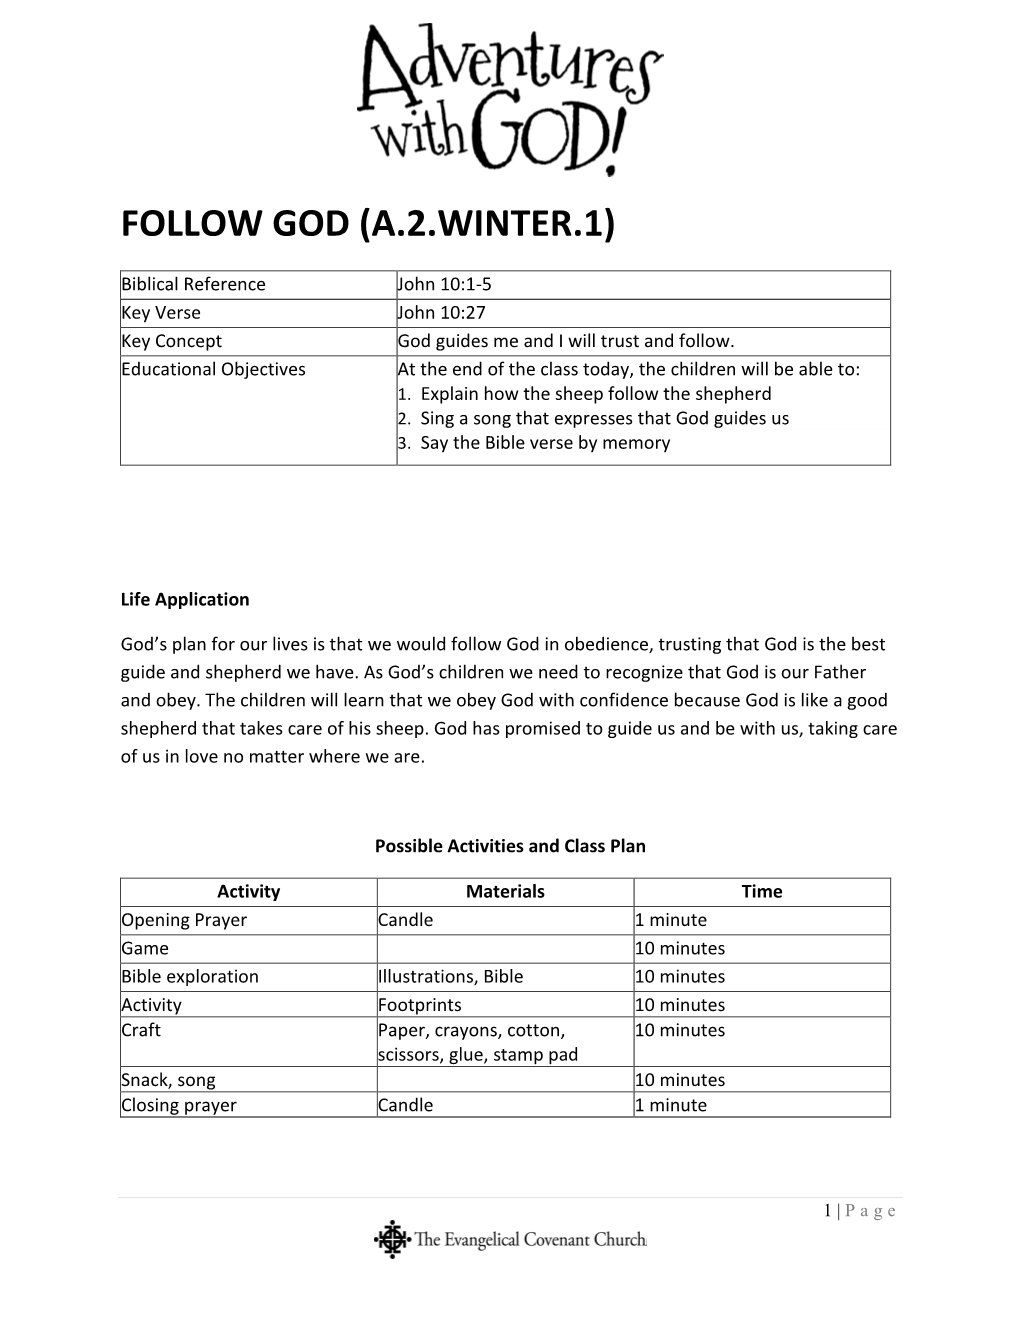 Follow God (A.2.Winter.1)